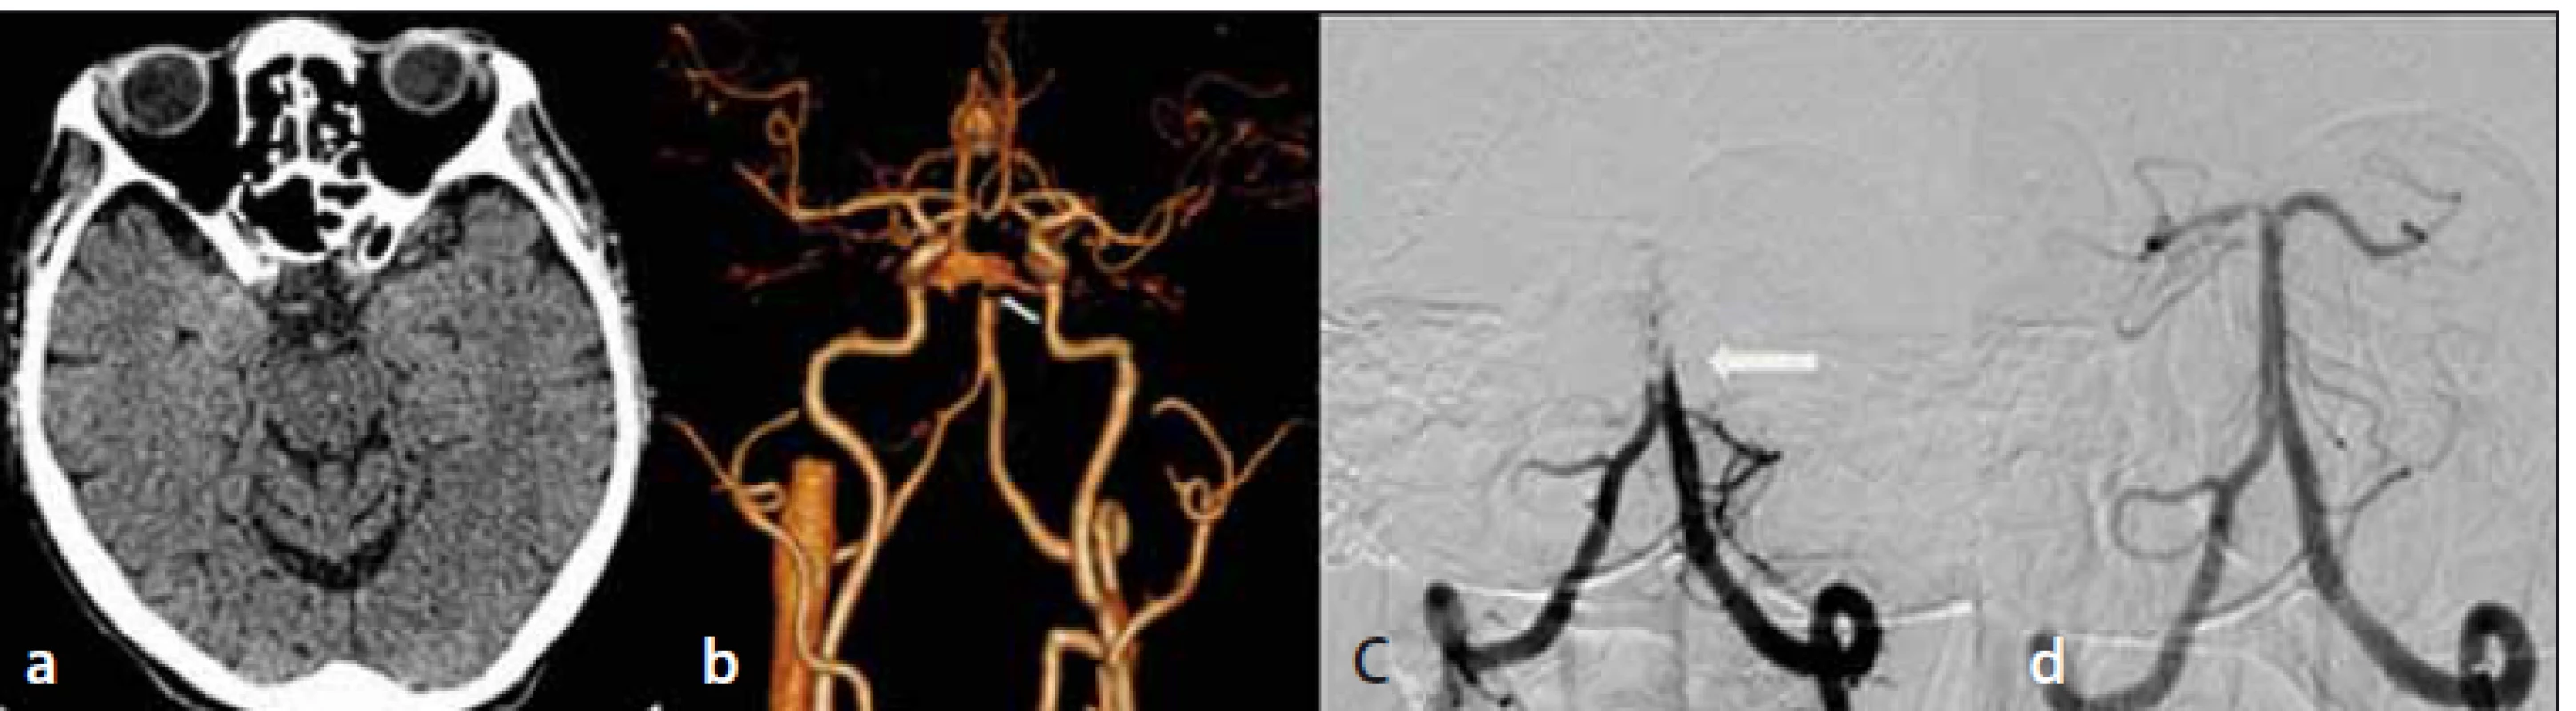 Natívne vyšetrenie CT mozgu – bez akútnych ložiskových zmien (a); CTA – oklúzia
vrcholu a. basilaris (šípka) (b); DSA – oklúzia a. basilaris (šípka) (c); DSA – kompletná rekanalizácia
oklúzie a. basilaris (d).<br>
Fig. 1. Non-enhanced brain CT – without acute ischemic lesions (a); CTA – top-of-basilaris
occlusion (arrow) (b); DSA – occlusion of basilar artery (arrow) (c); DSA – complete recanalization
of basilar artery occlusion (d).